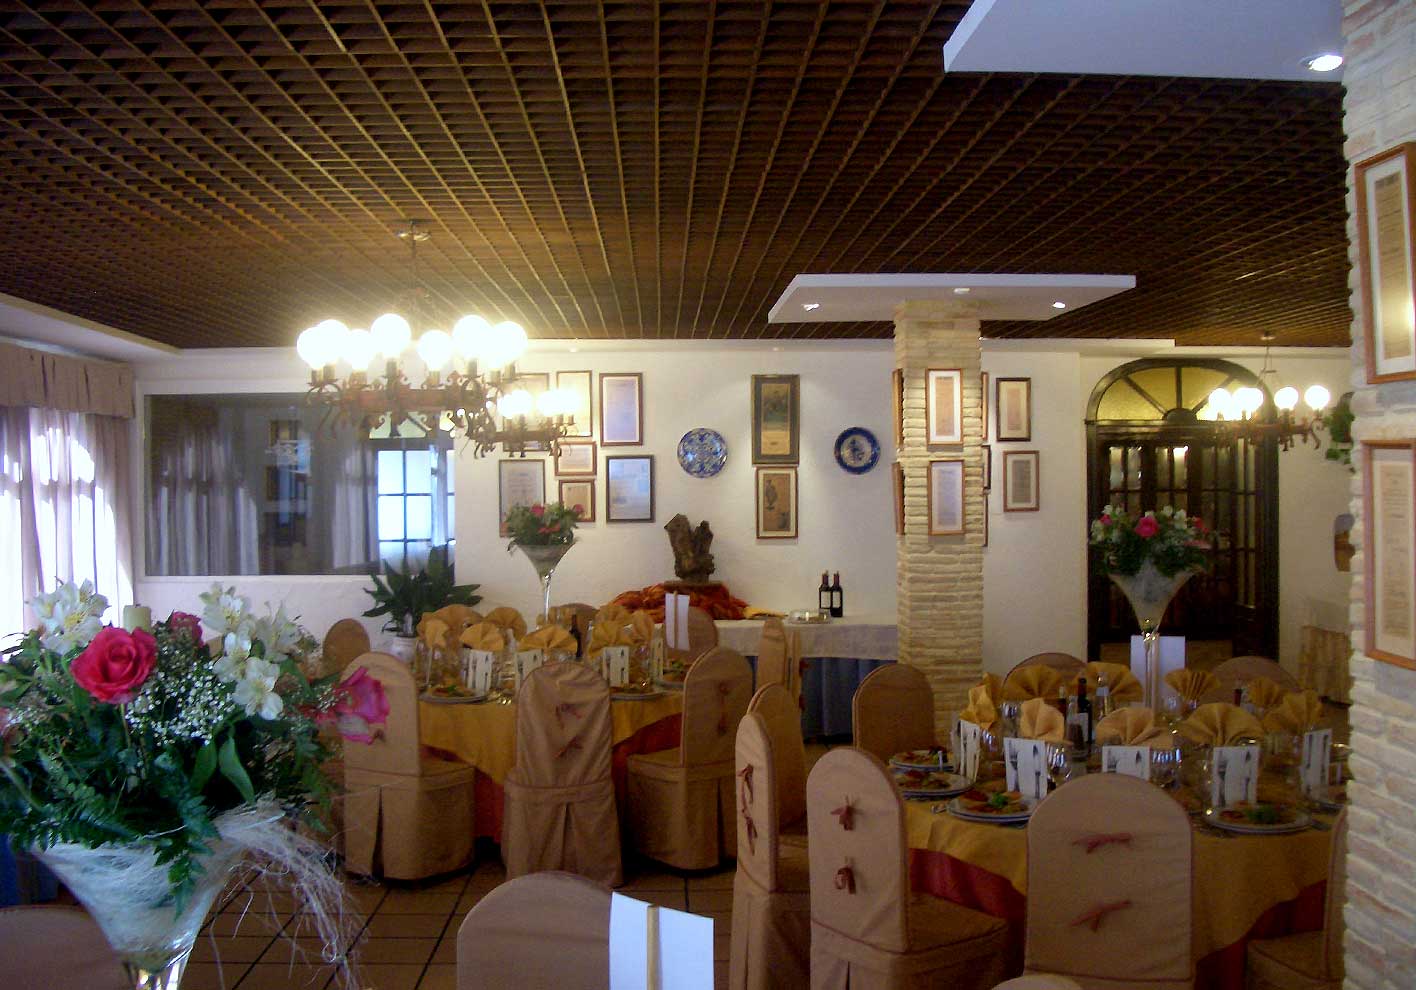 Private Dining Room 03 - Hotel Restaurante Terraza Carmona in Vera, Almeria